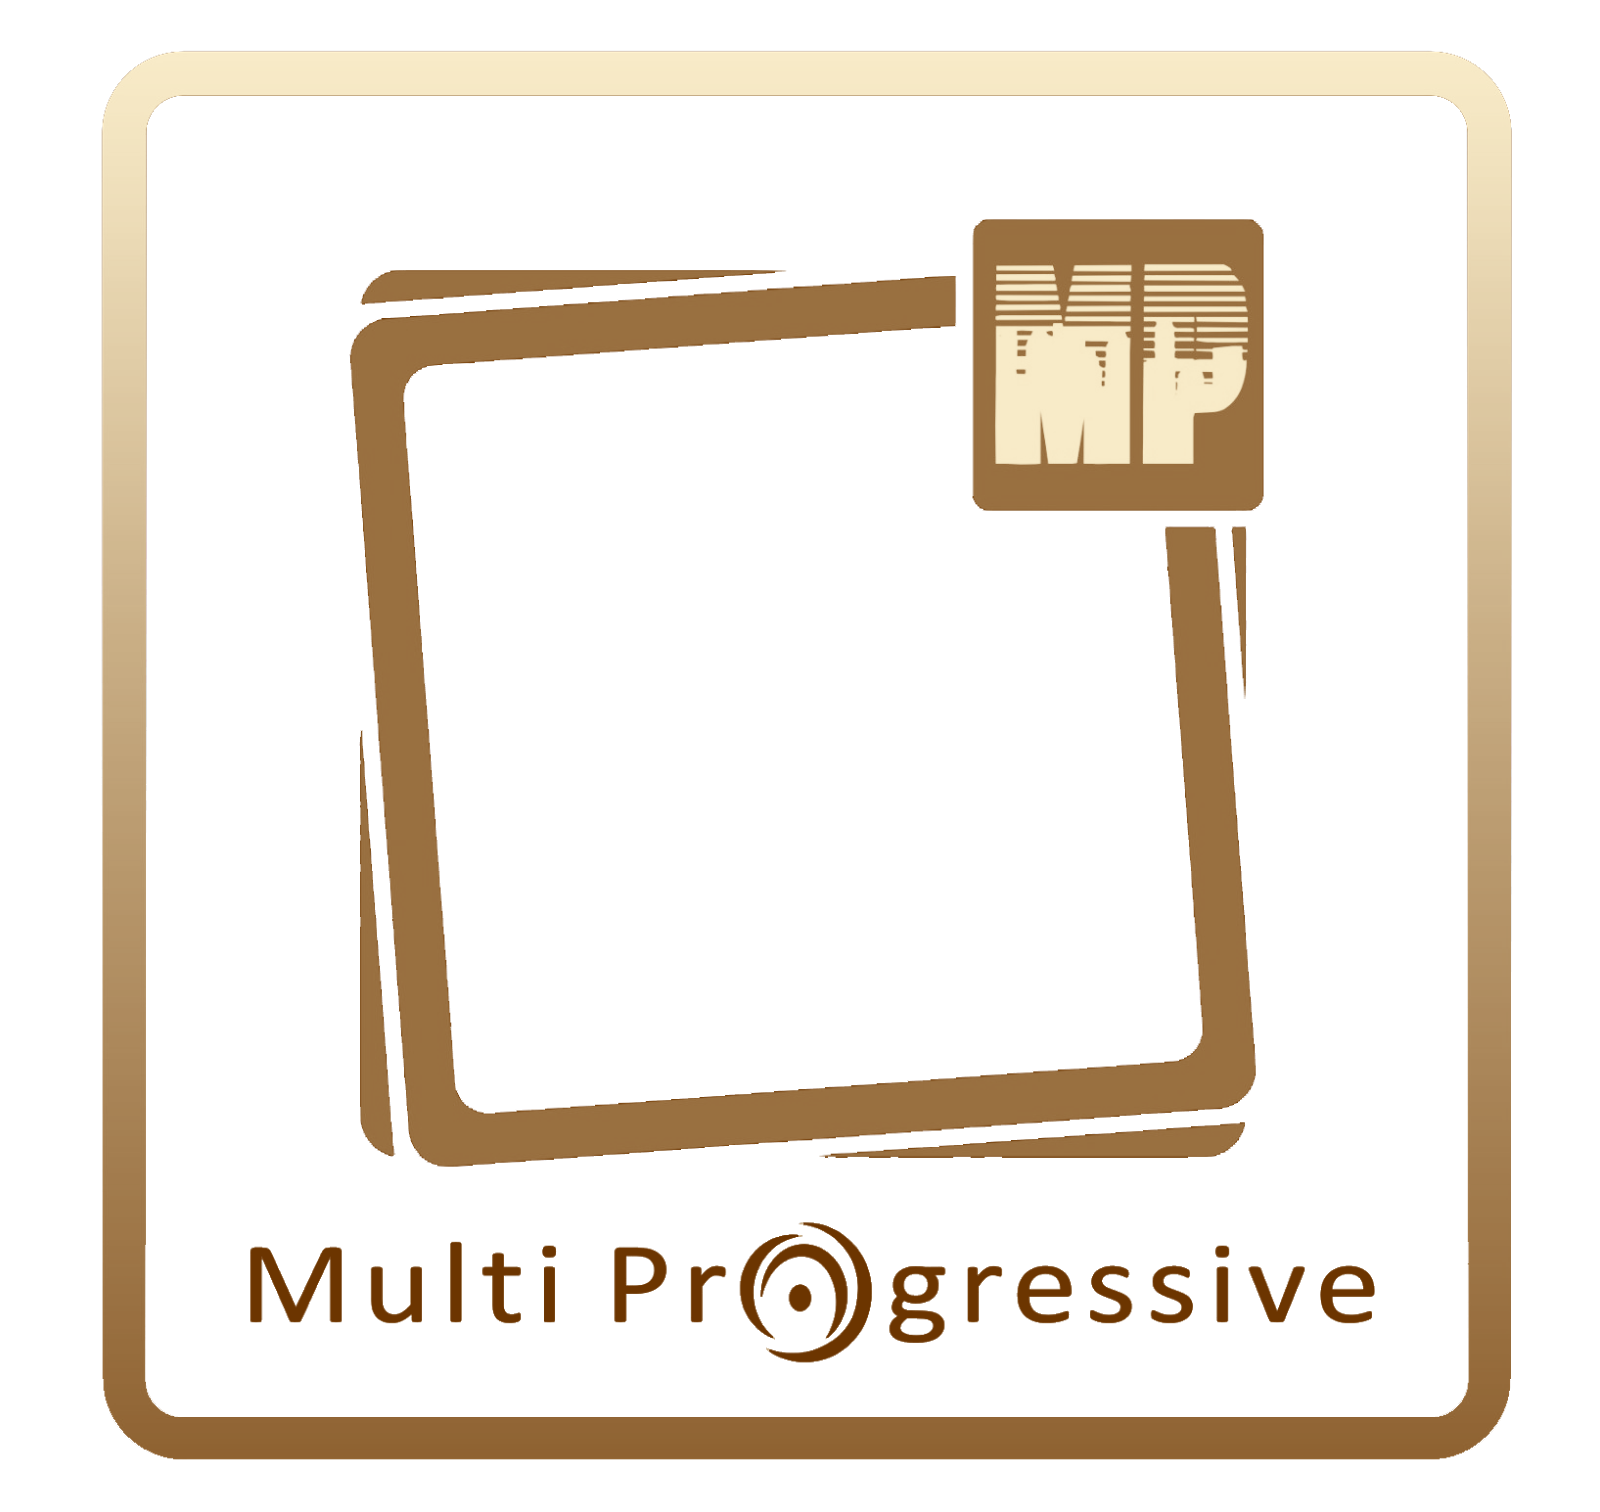  multi progressive